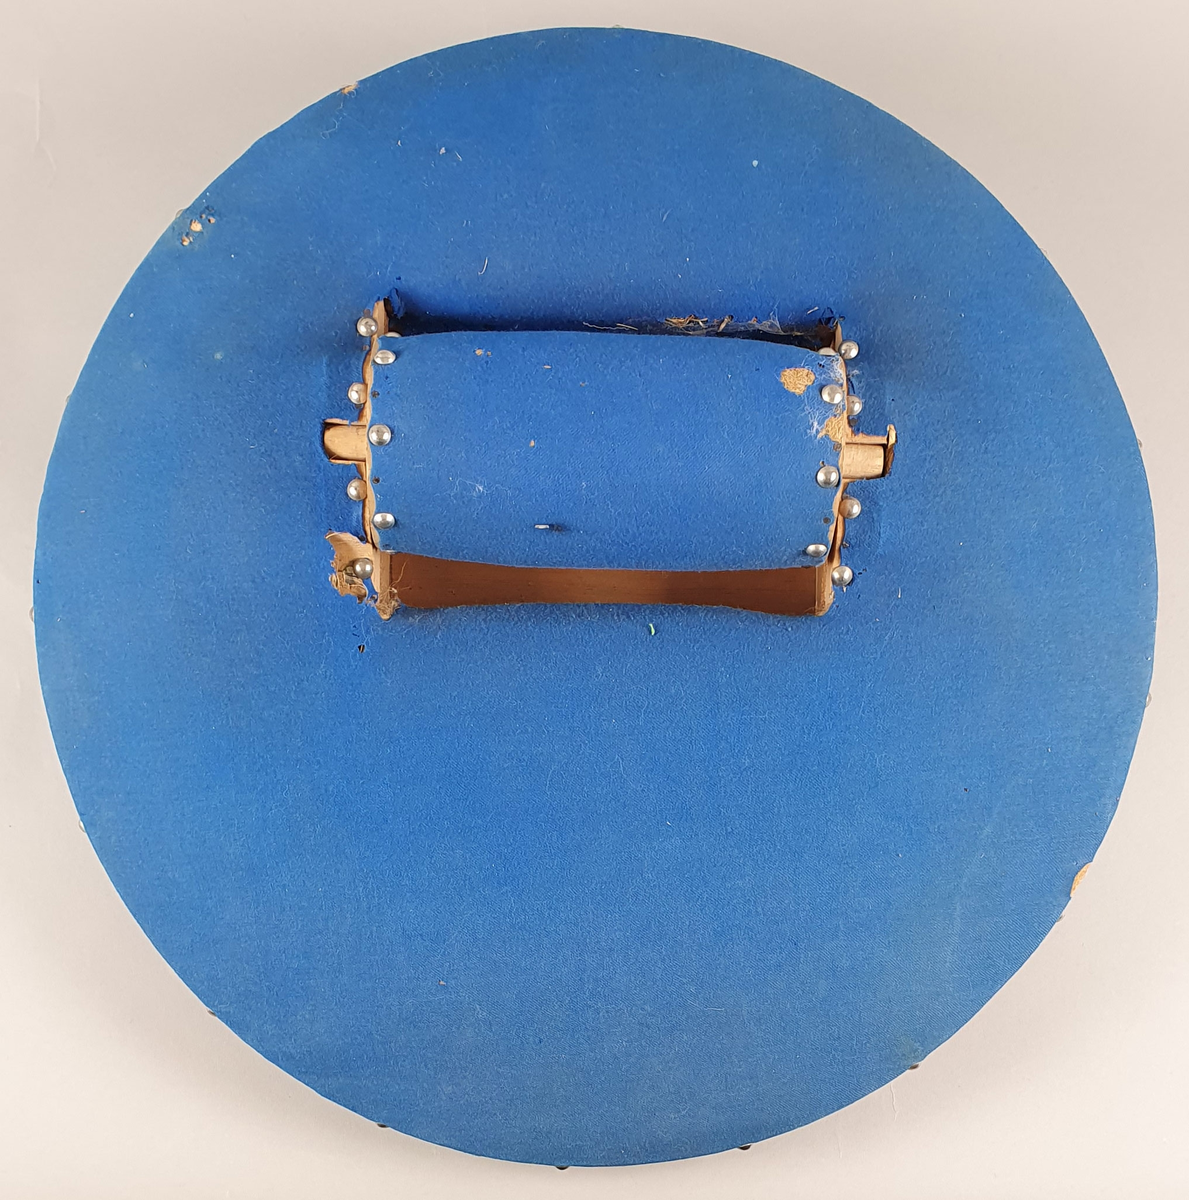 Rundt kniplingsbord av tre trukket med blå filt. En sylinderformet nålepute i midten. Til kniplingsbordet følger et trekk av bomullslerret som er brodert med blå initialer og har blå bånd langs kanten, som kan knytes rundt bordet.